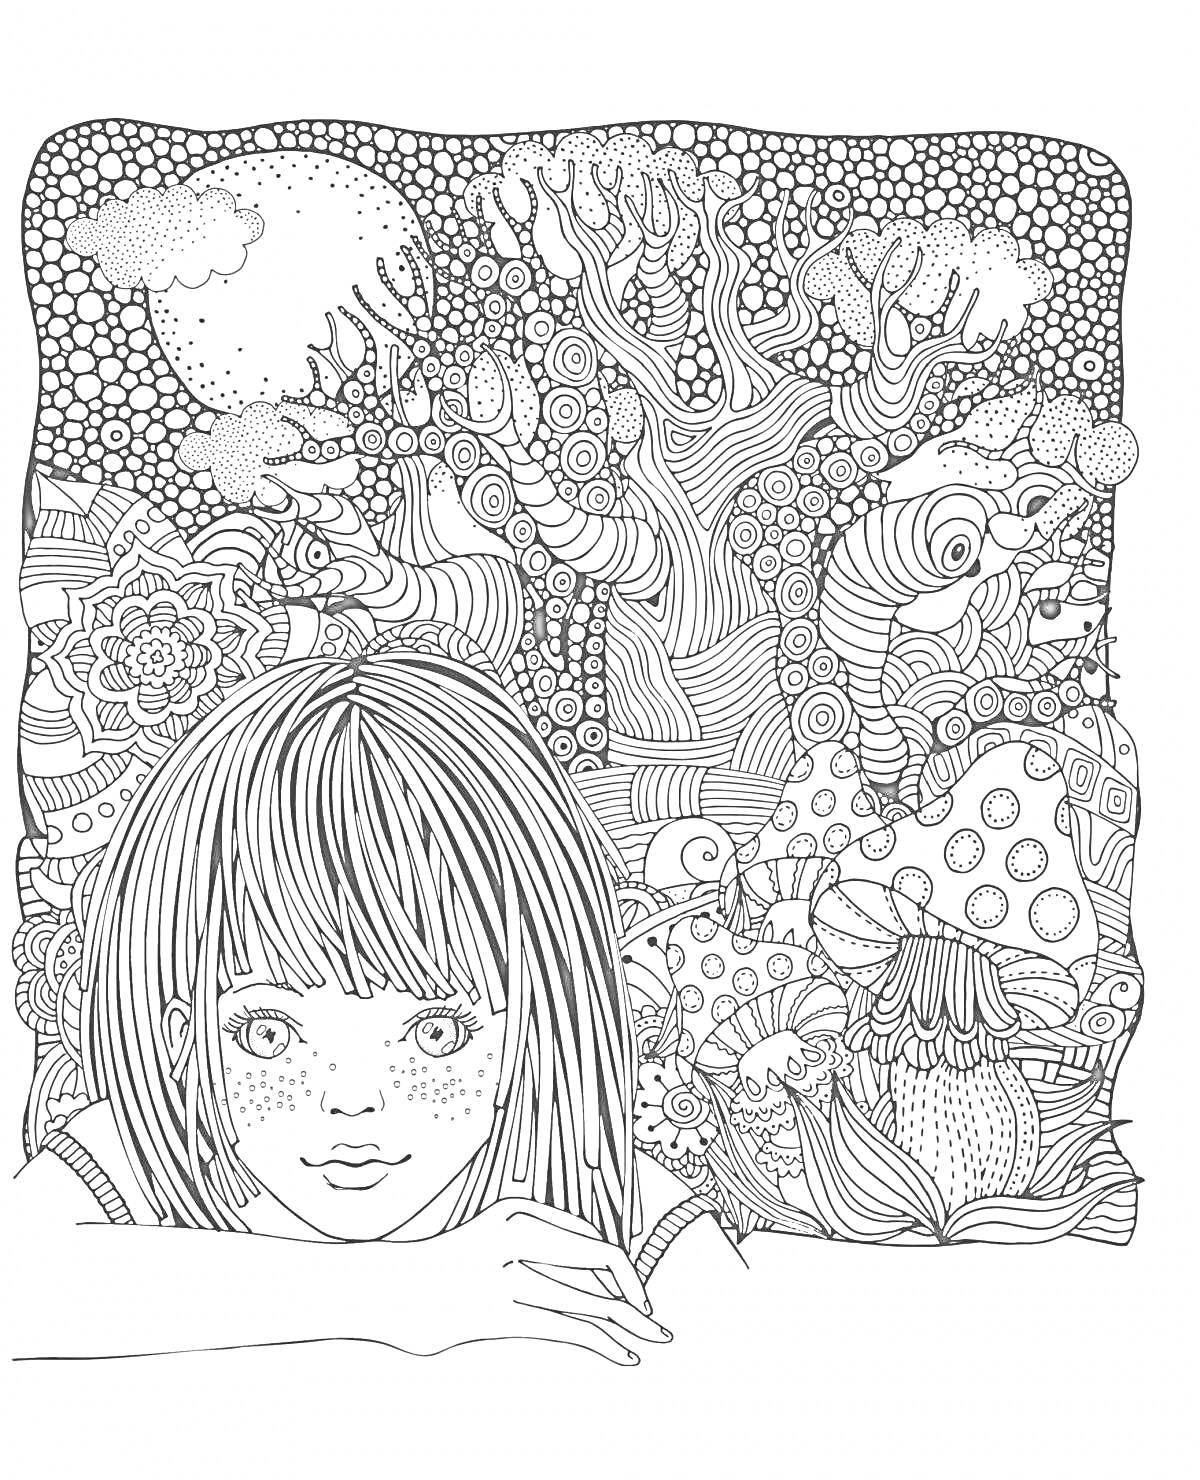 Раскраска Девочка с грибами, деревьями и облаками в антистресс узорах